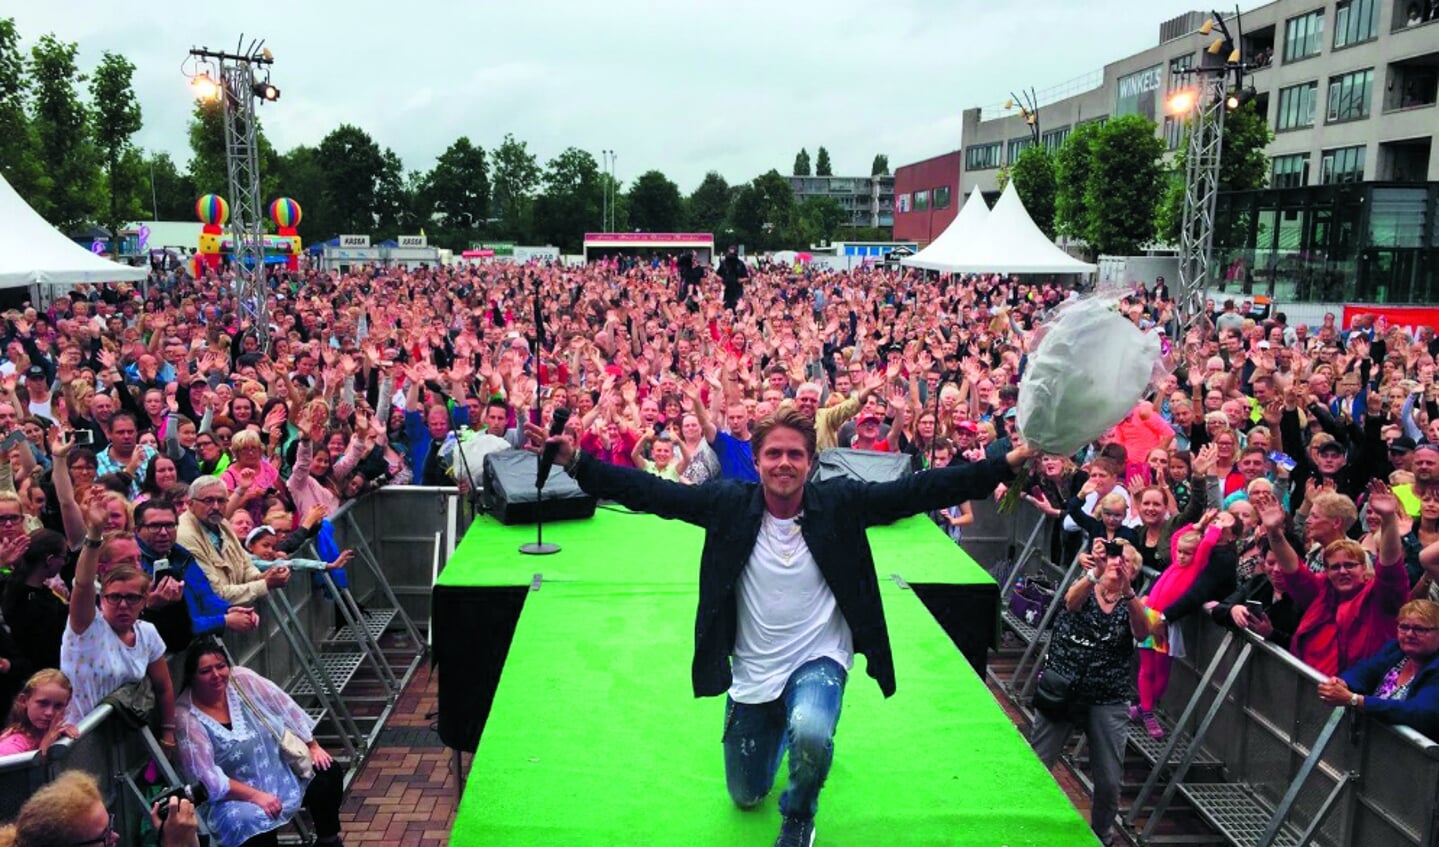 De RADIONL Zomertoer haalt de grootste Nederlandse artiesten naar Heerhugowaard. (aangeleverde foto)